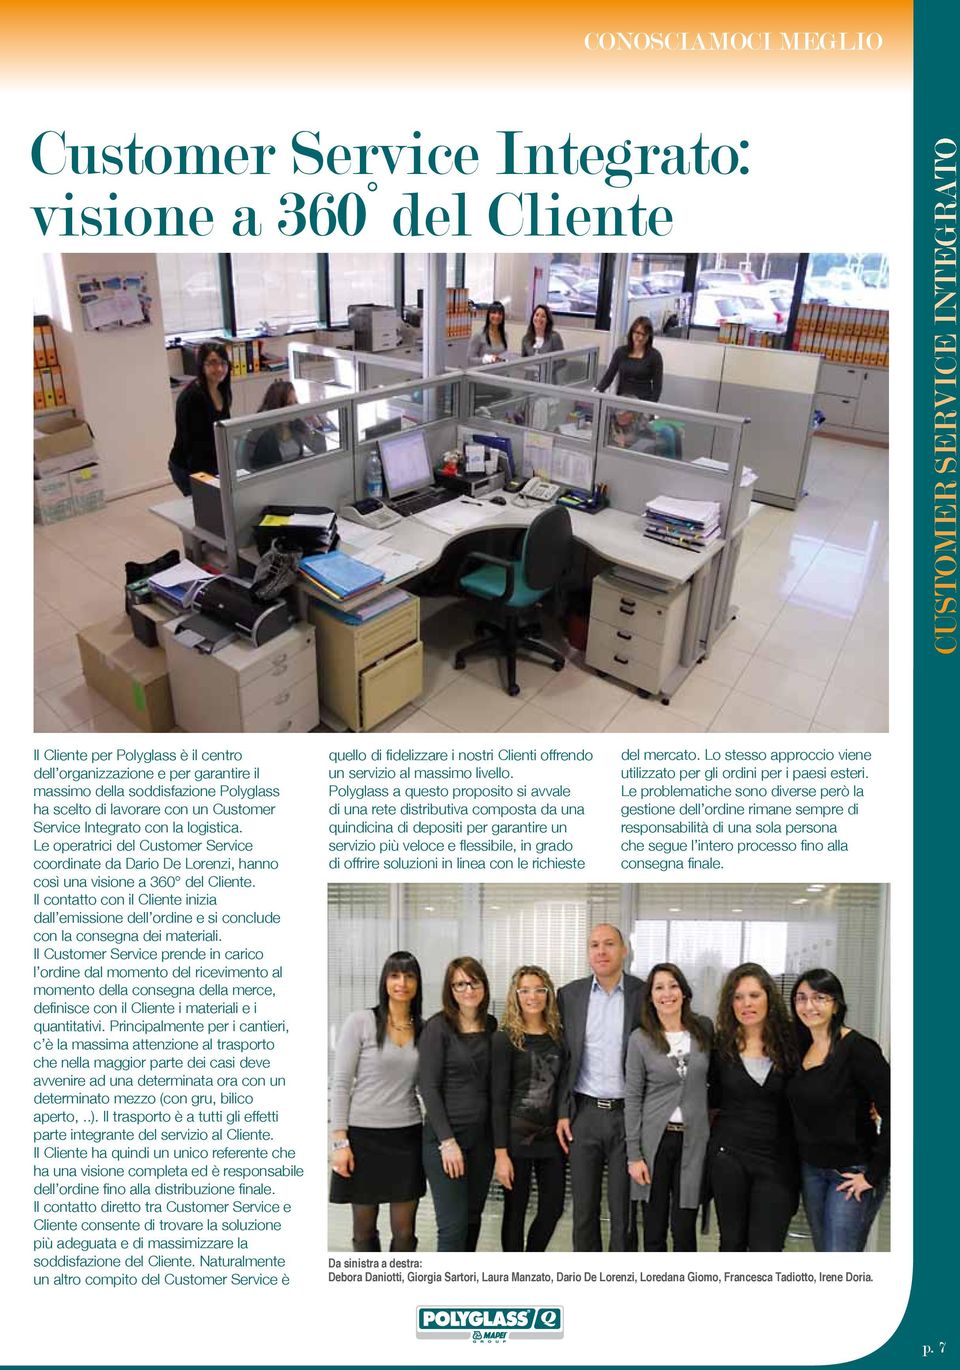 Le operatrici del Customer Service coordinate da Dario De Lorenzi, hanno così una visione a 360 del Cliente.